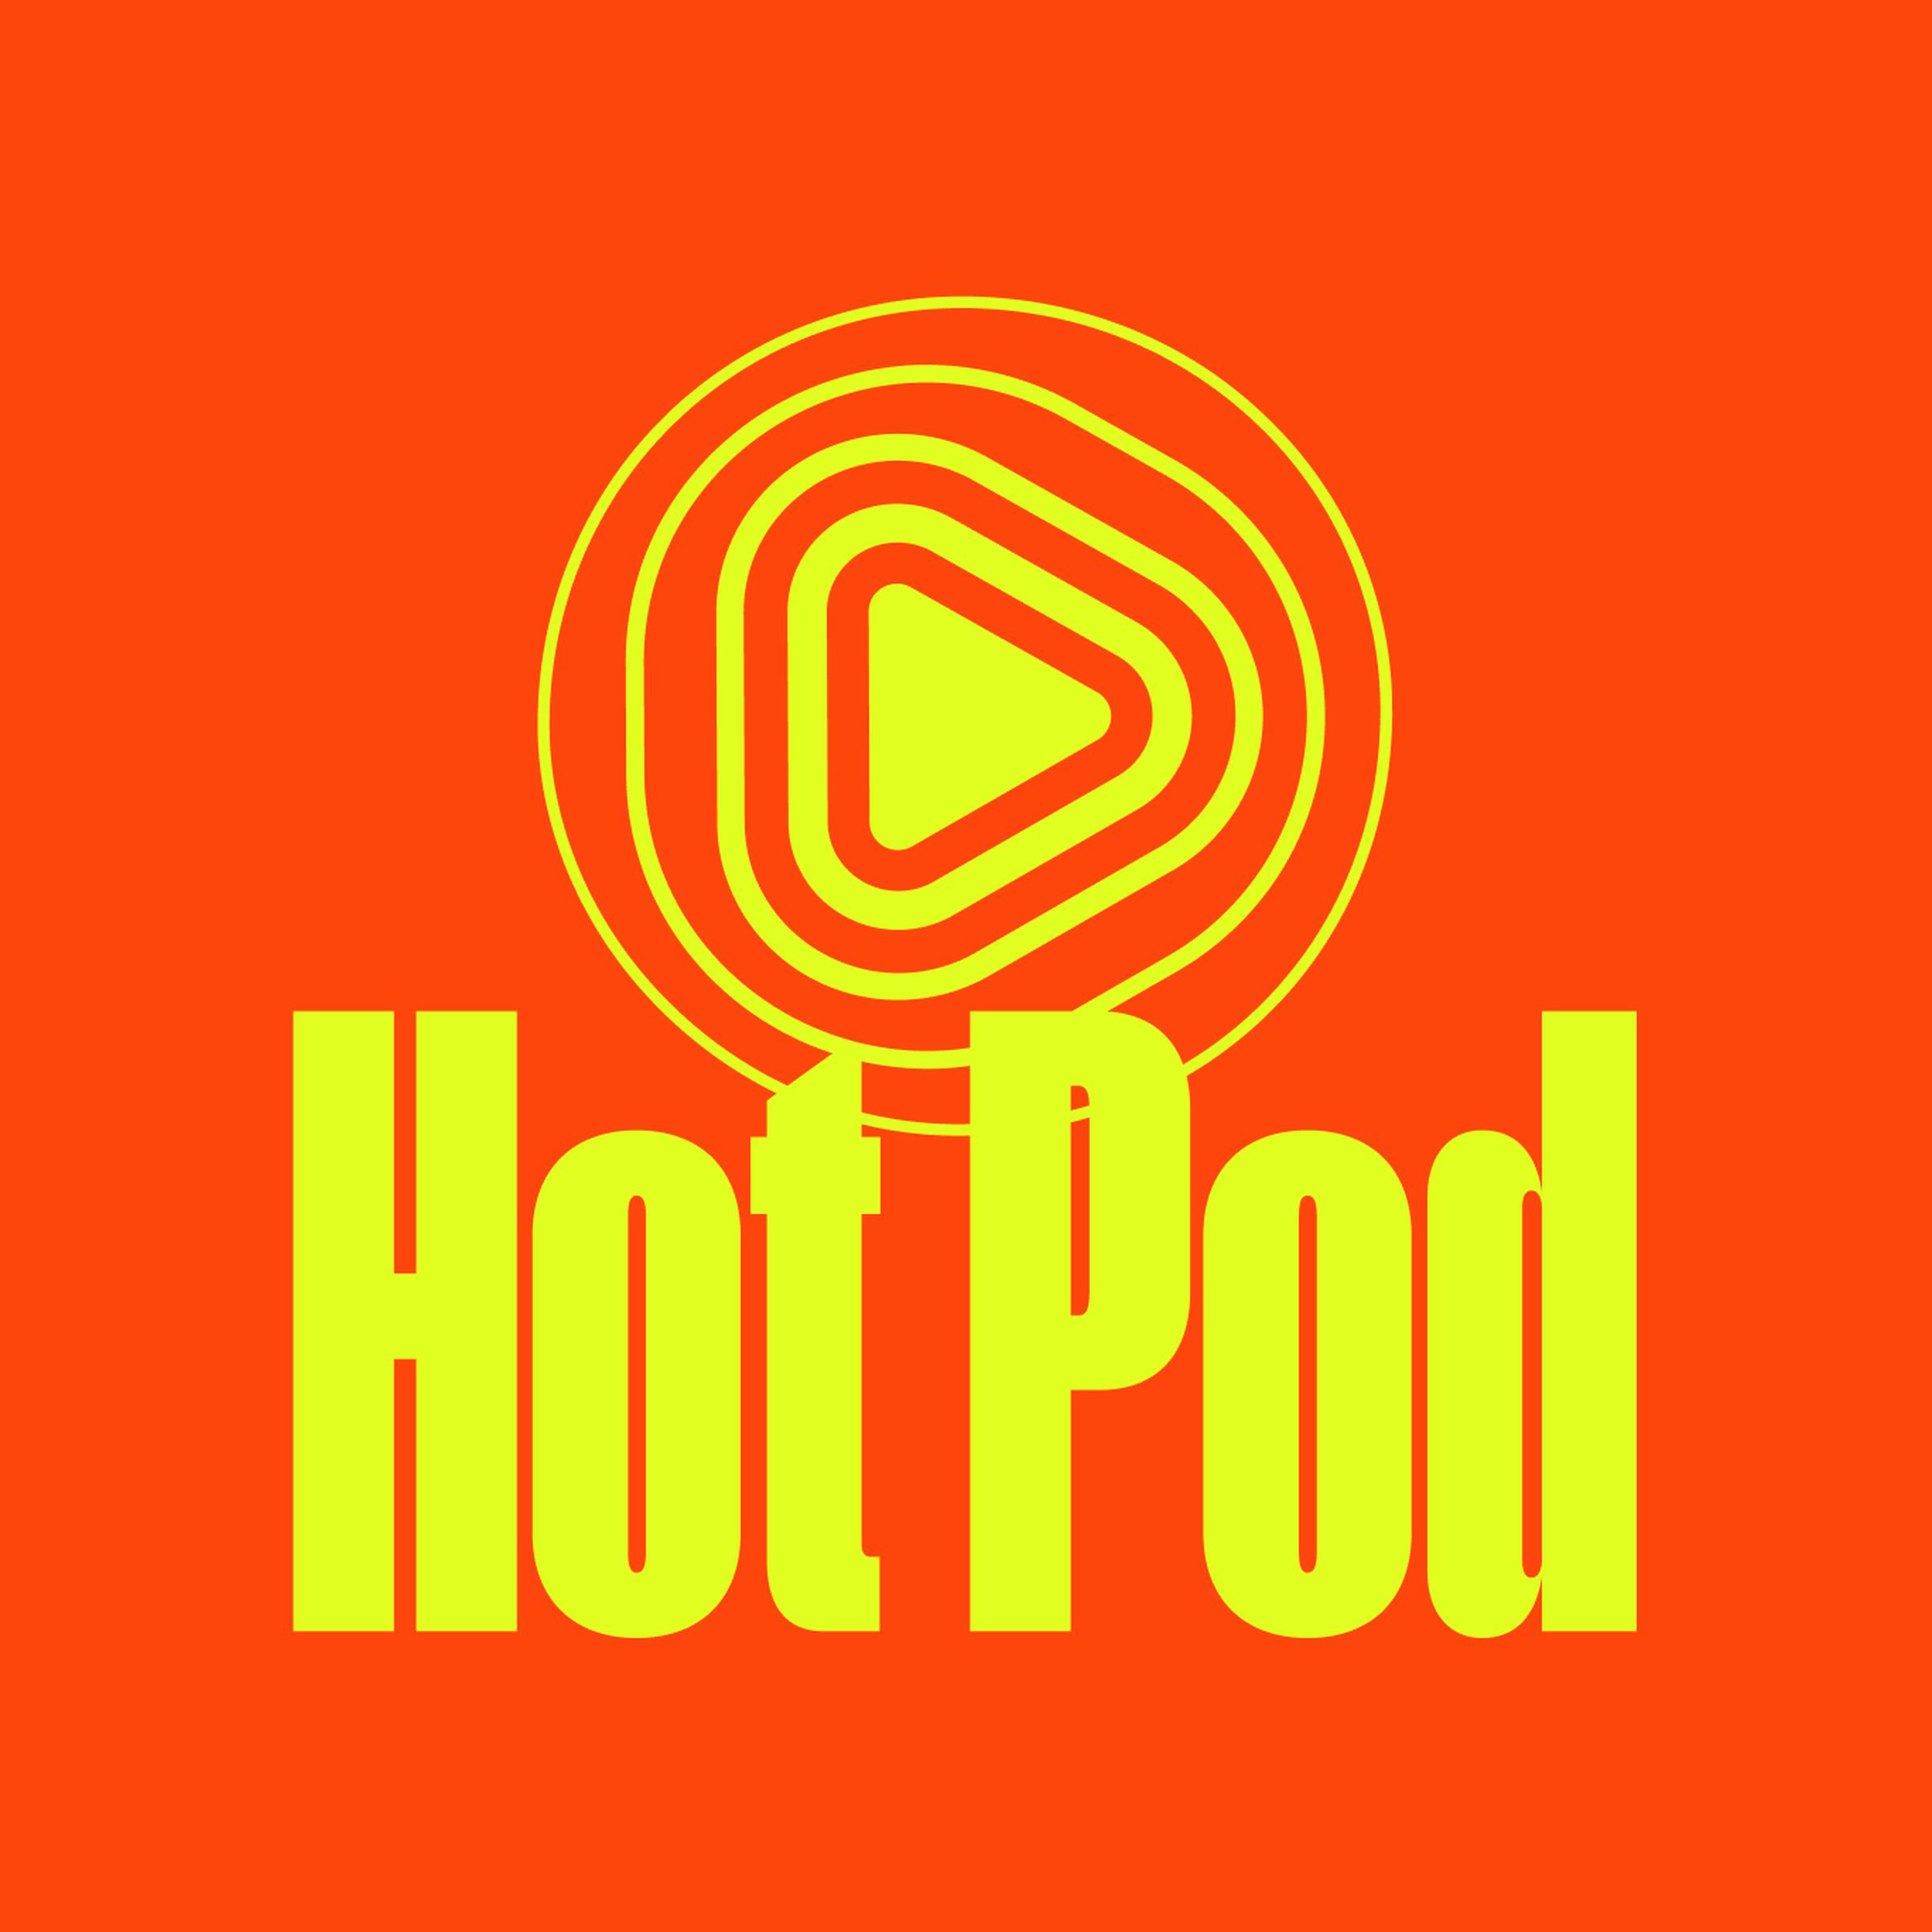 The logo for Hot Pod.